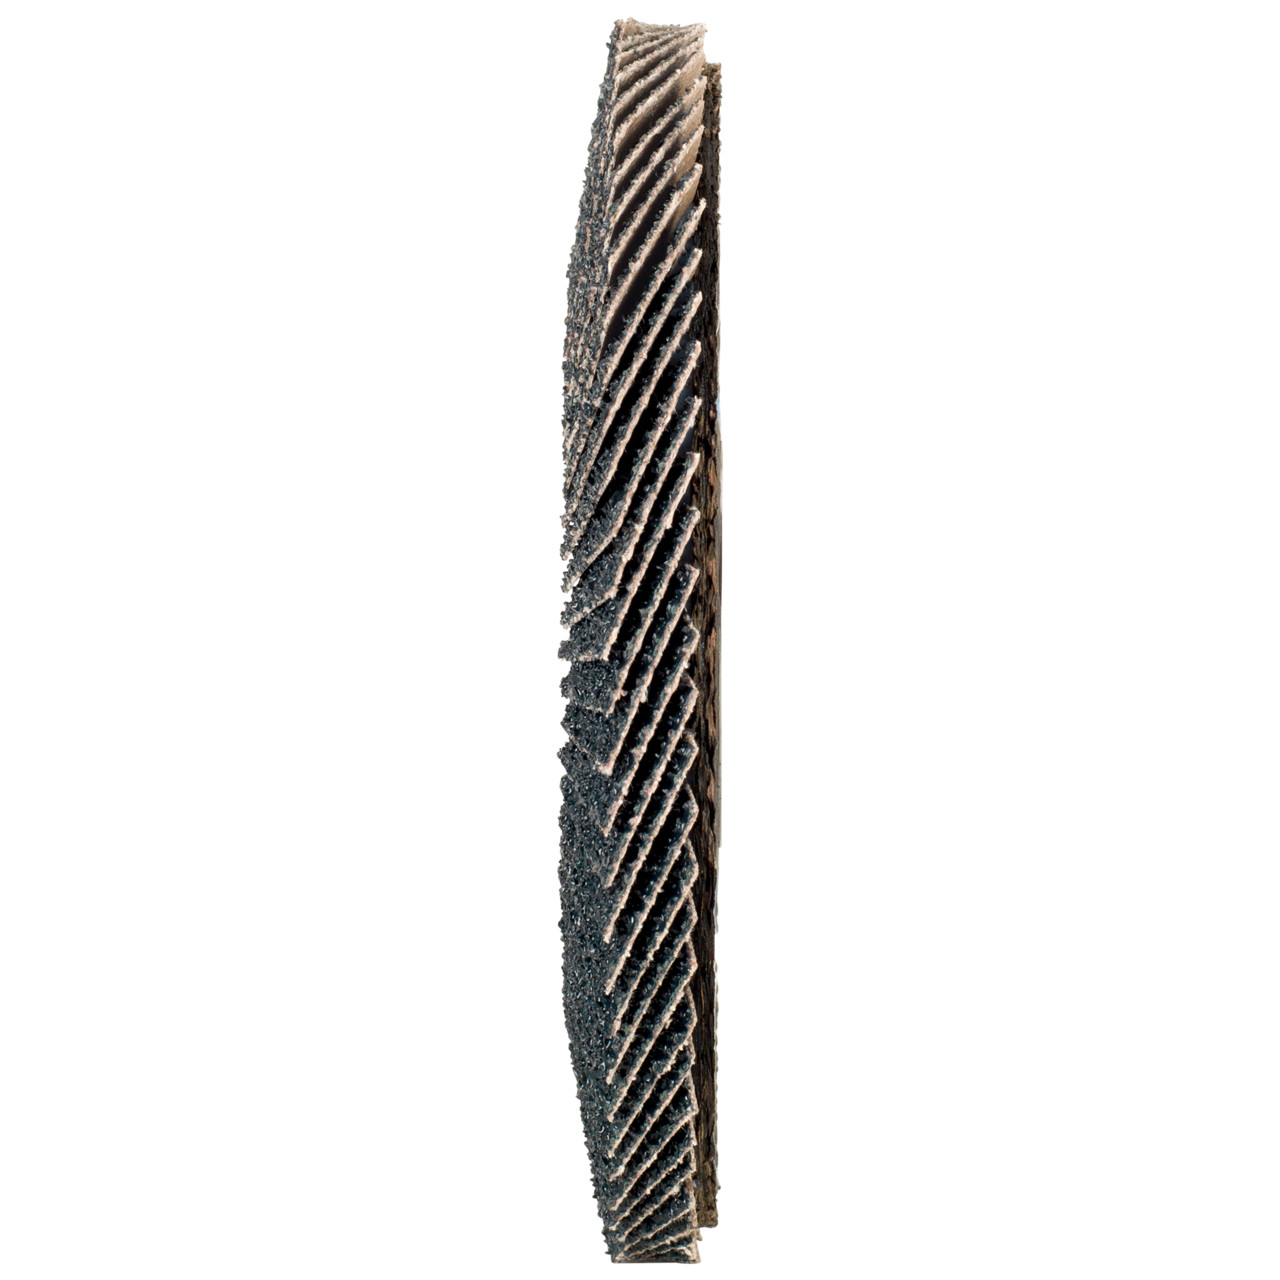 TYROLIT Fächerscheibe DxH 115x22,2 2in1 für Stahl & Edelstahl, P120, Form: 28A - gerade Ausführung (Glasfaserträgerkörperausführung), Art. 846344